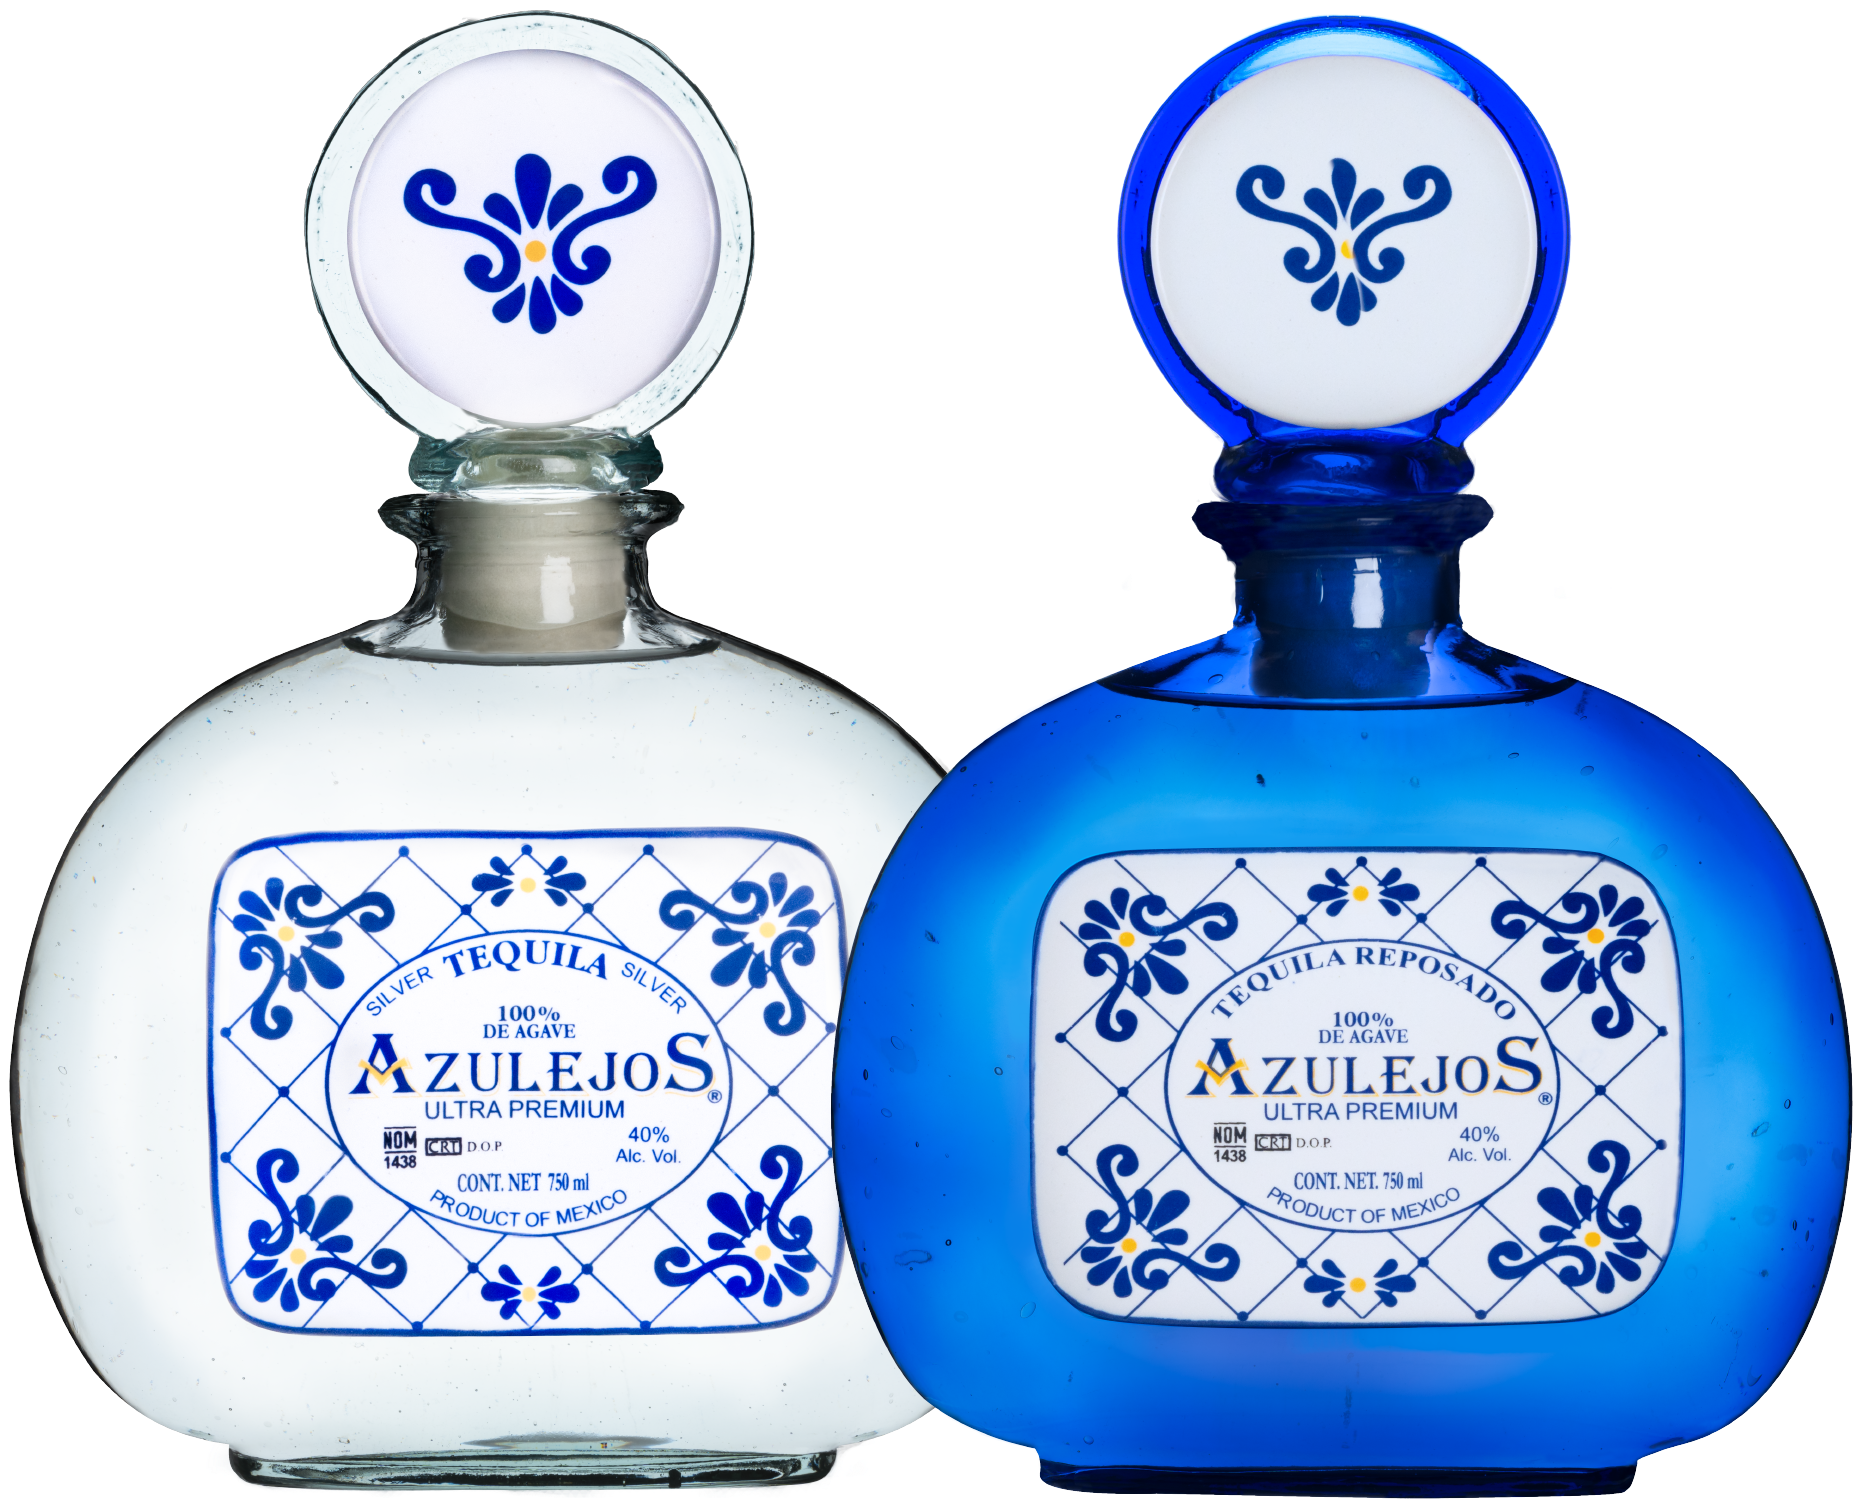 Azulejos Blanco & Reposado Classic Collection Bottles